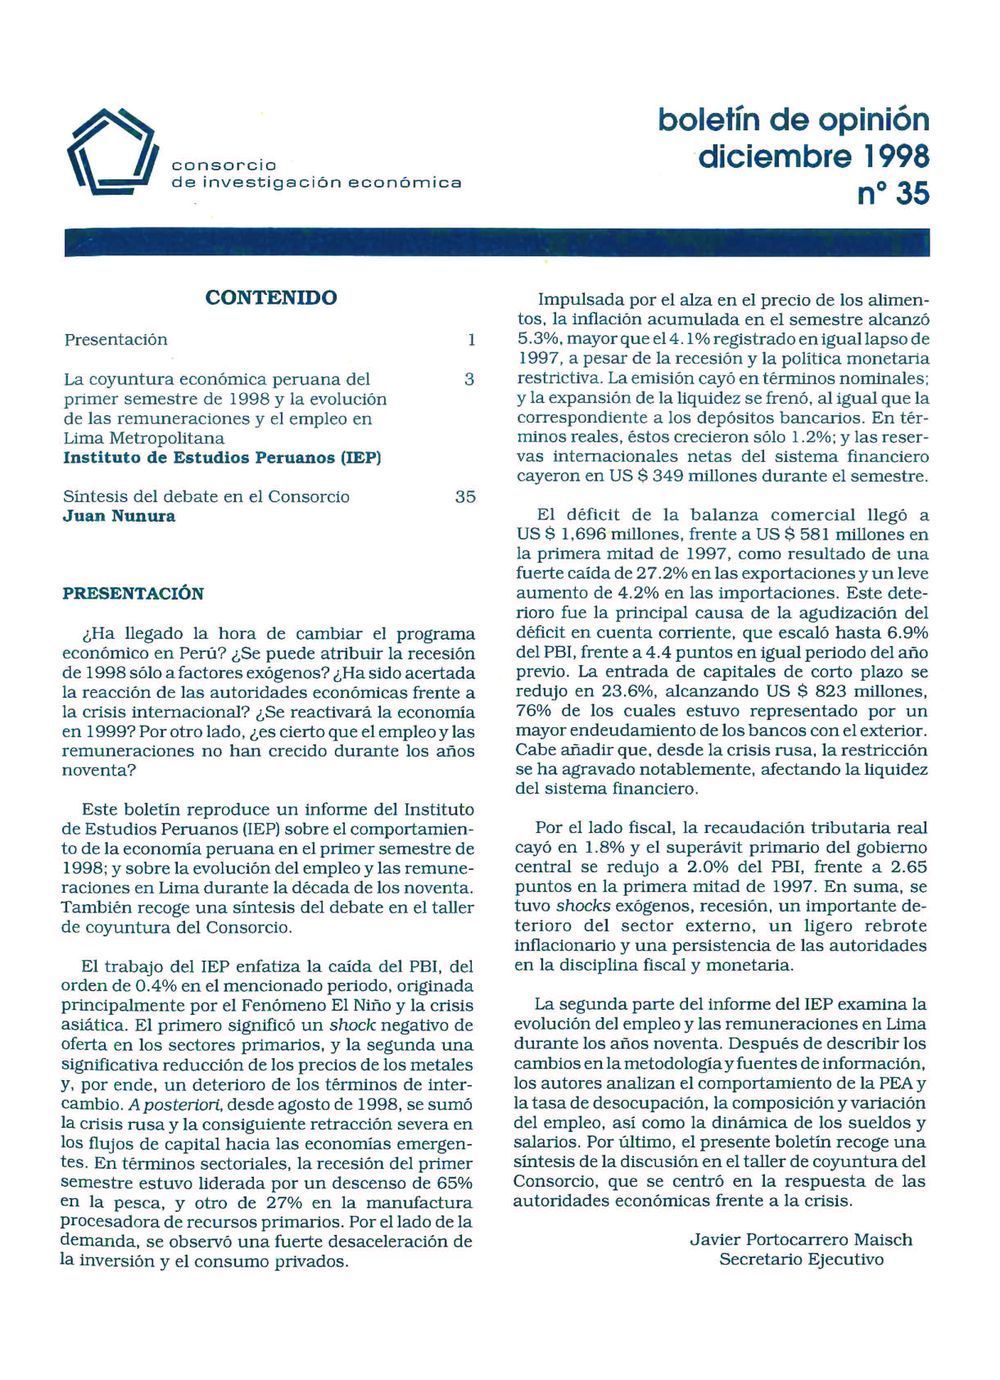 Boletín de opinión: Análisis de la economía peruana, 1998-I